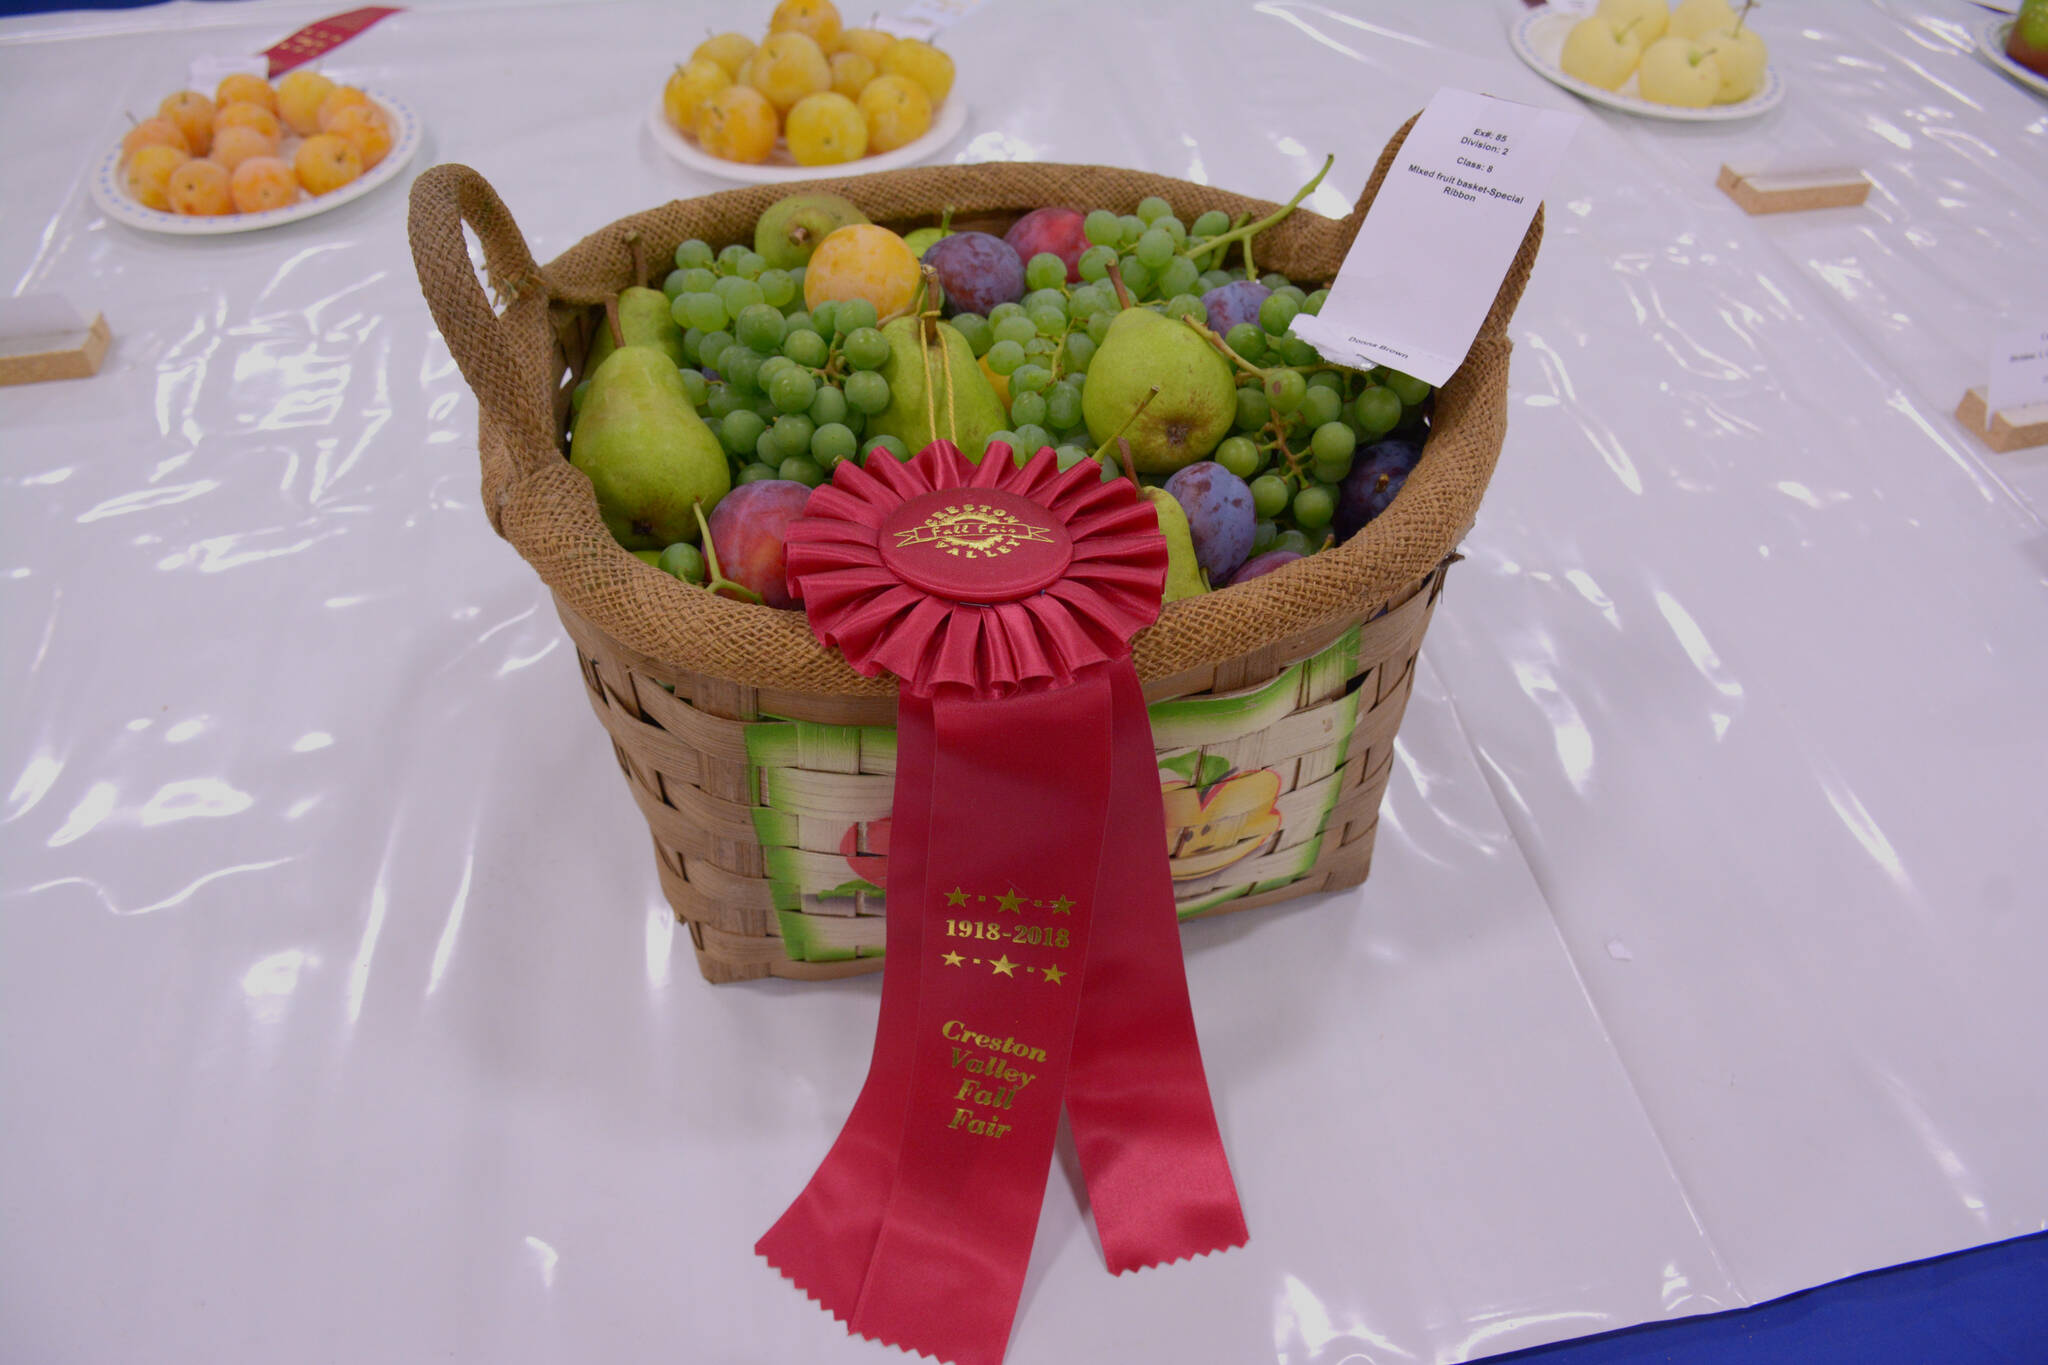 An award-winning fruit basket. (Photo by Kelsey Yates)